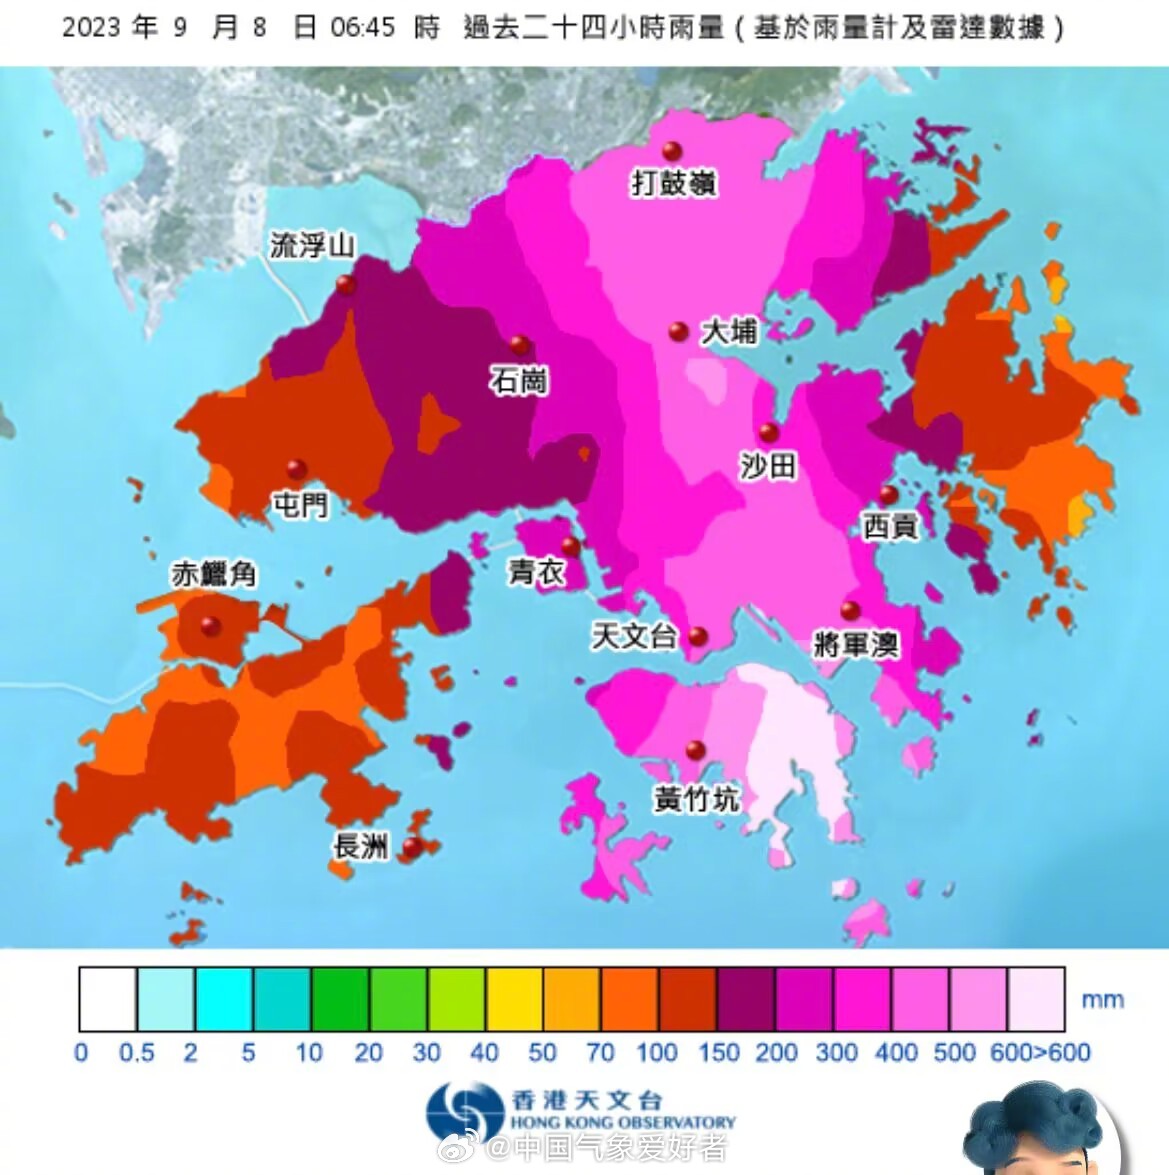 香港世紀暴雨 大致恢復正常但維持極端天氣警告 - 新聞 - Rti 中央廣播電臺